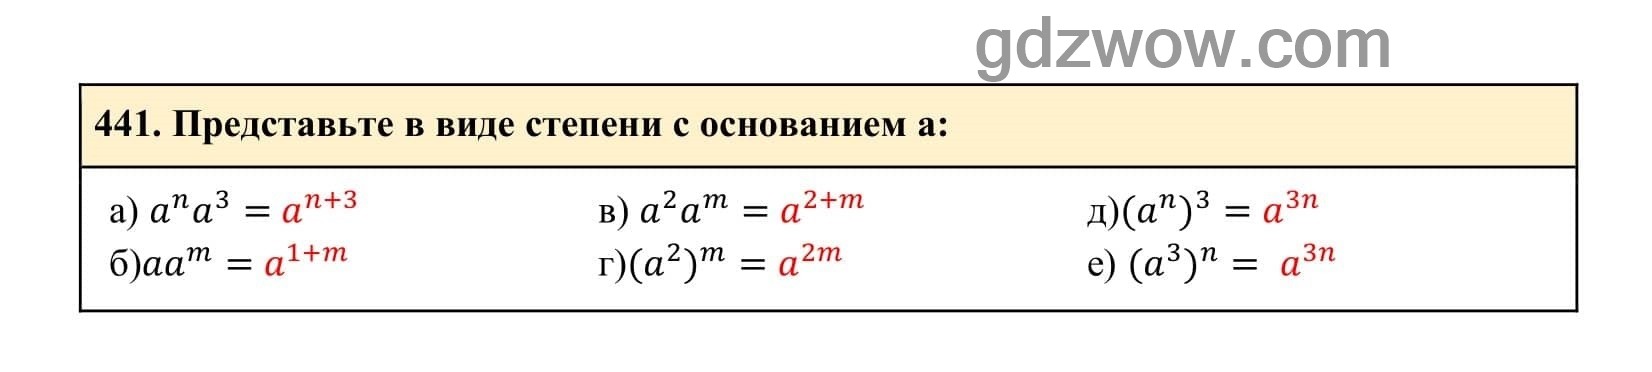 Упражнение 441 - ГДЗ по Алгебре 7 класс Учебник Макарычев (решебник) - GDZwow